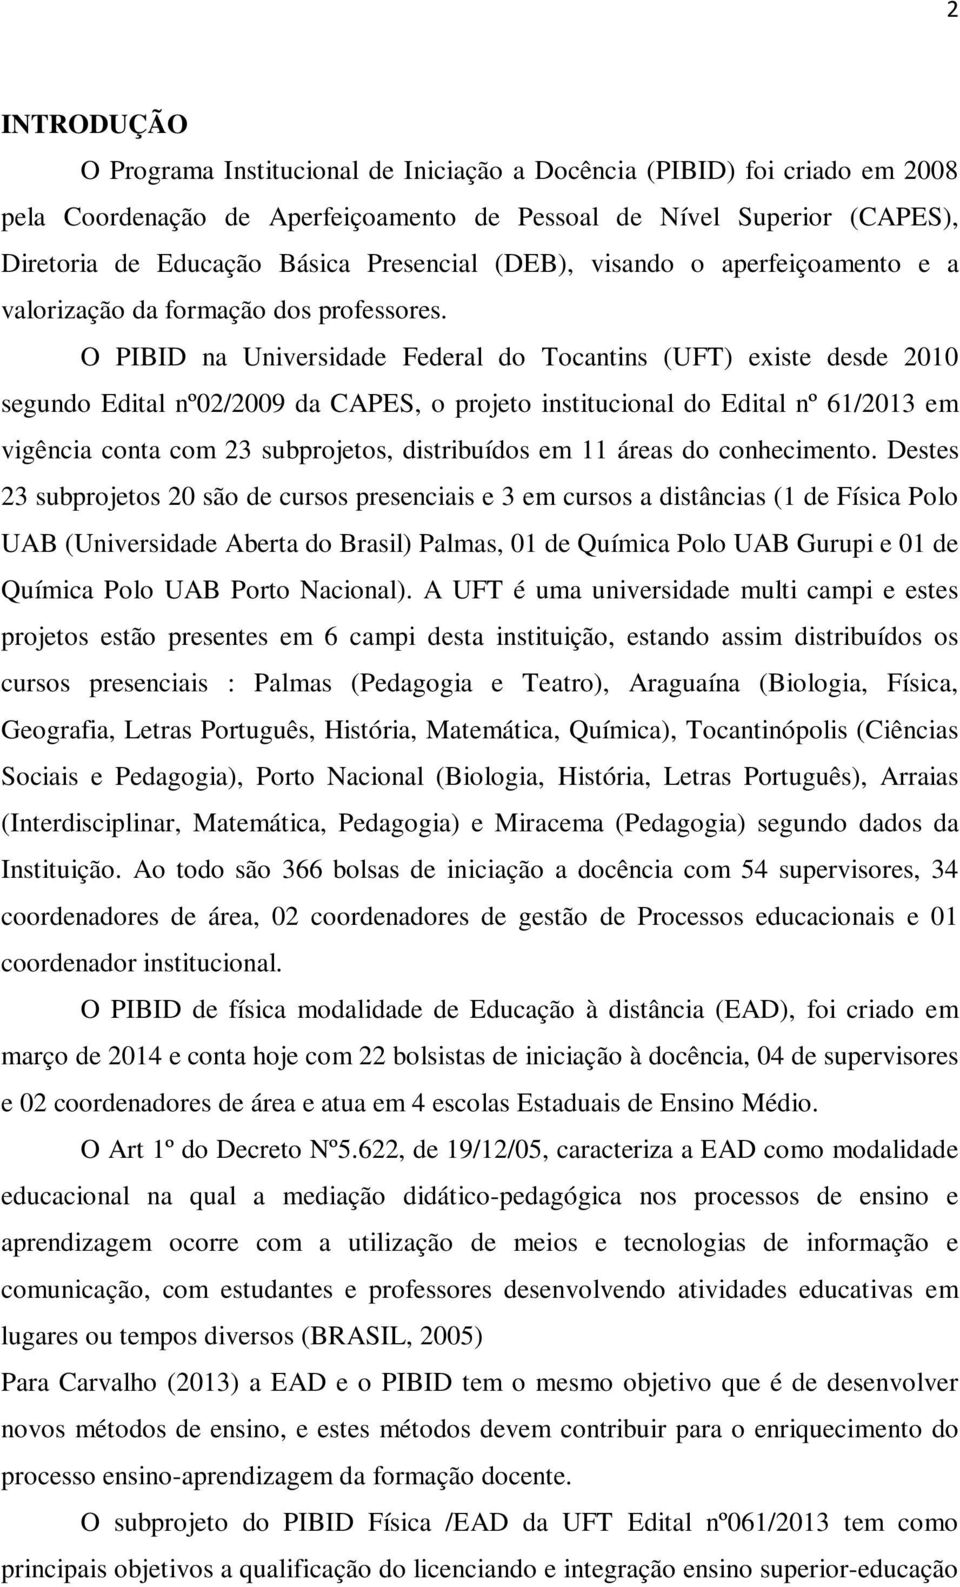 O PIBID na Universidade Federal do Tocantins (UFT) existe desde 2010 segundo Edital nº02/2009 da CAPES, o projeto institucional do Edital nº 61/2013 em vigência conta com 23 subprojetos, distribuídos